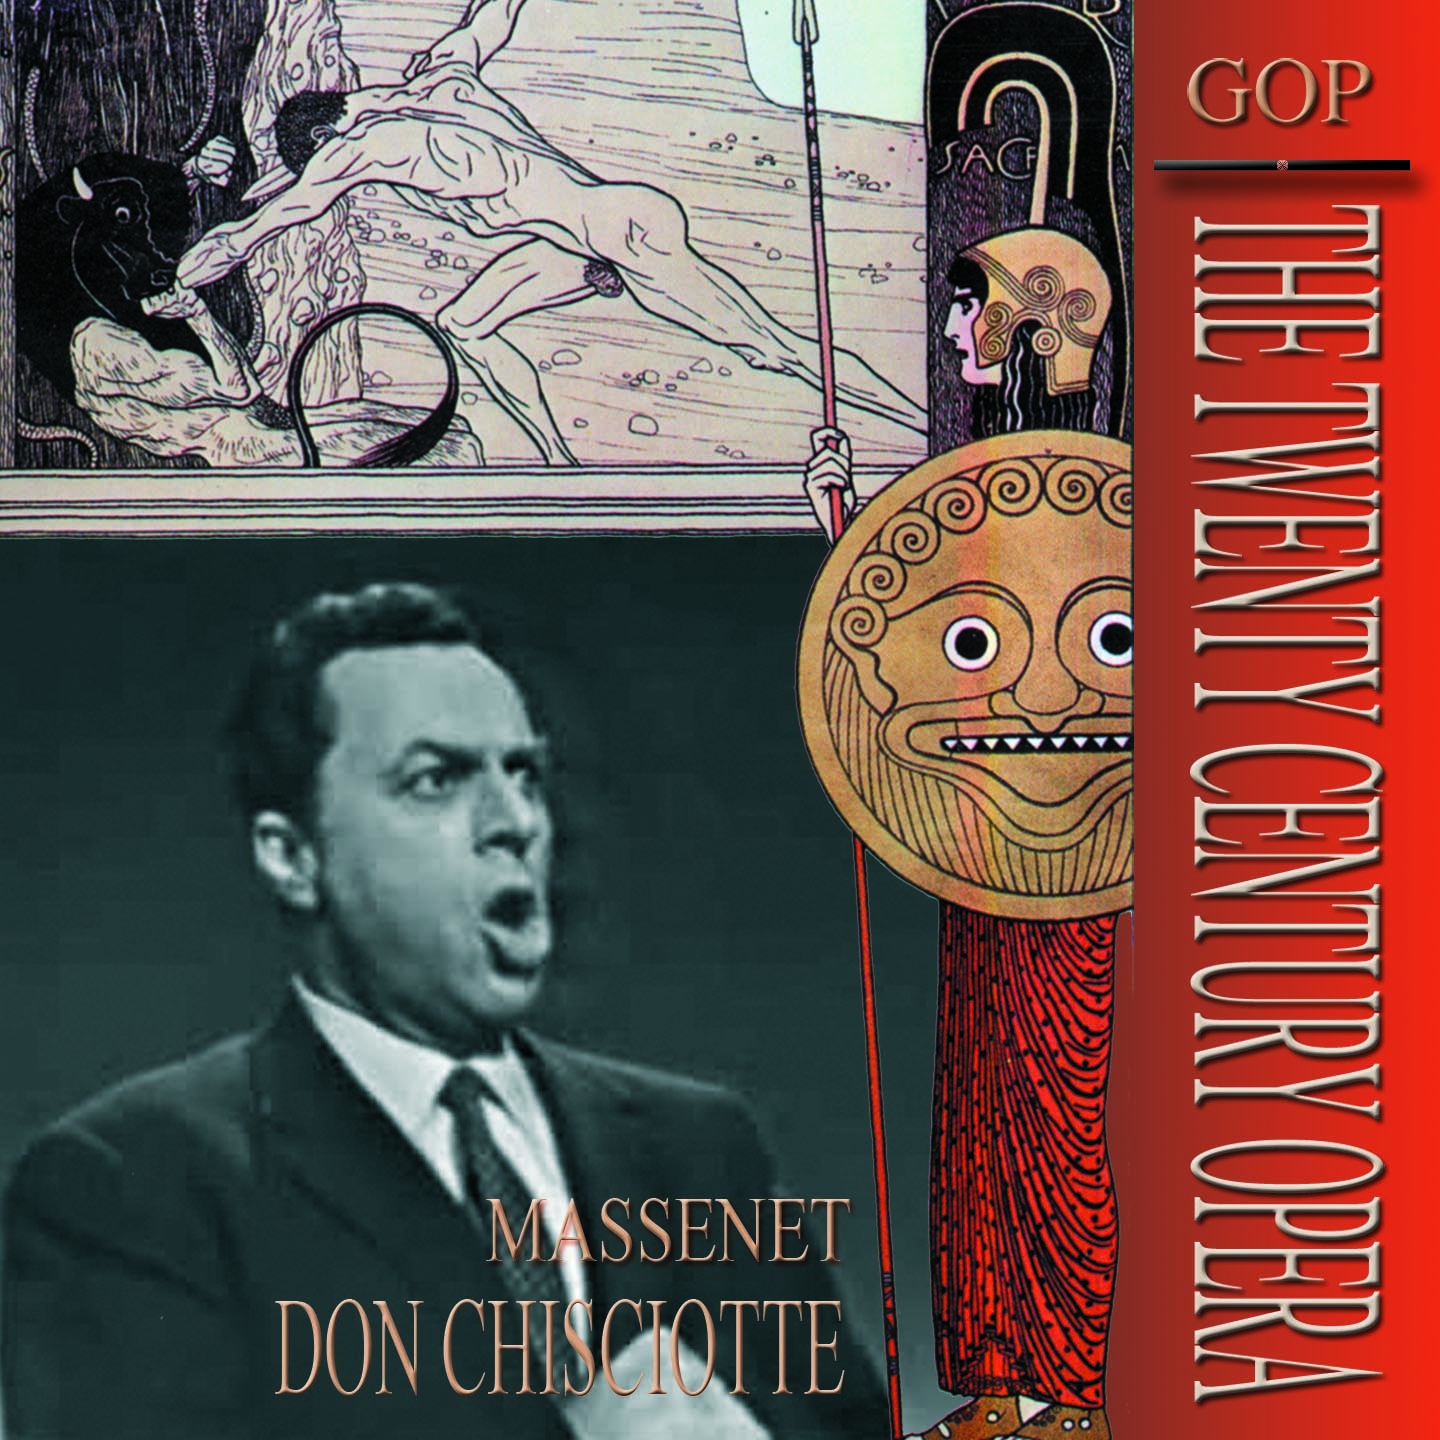 Don Chisciotte, Act II: "Non vedi!... Che?" (Don Chisciotte, Sancio)